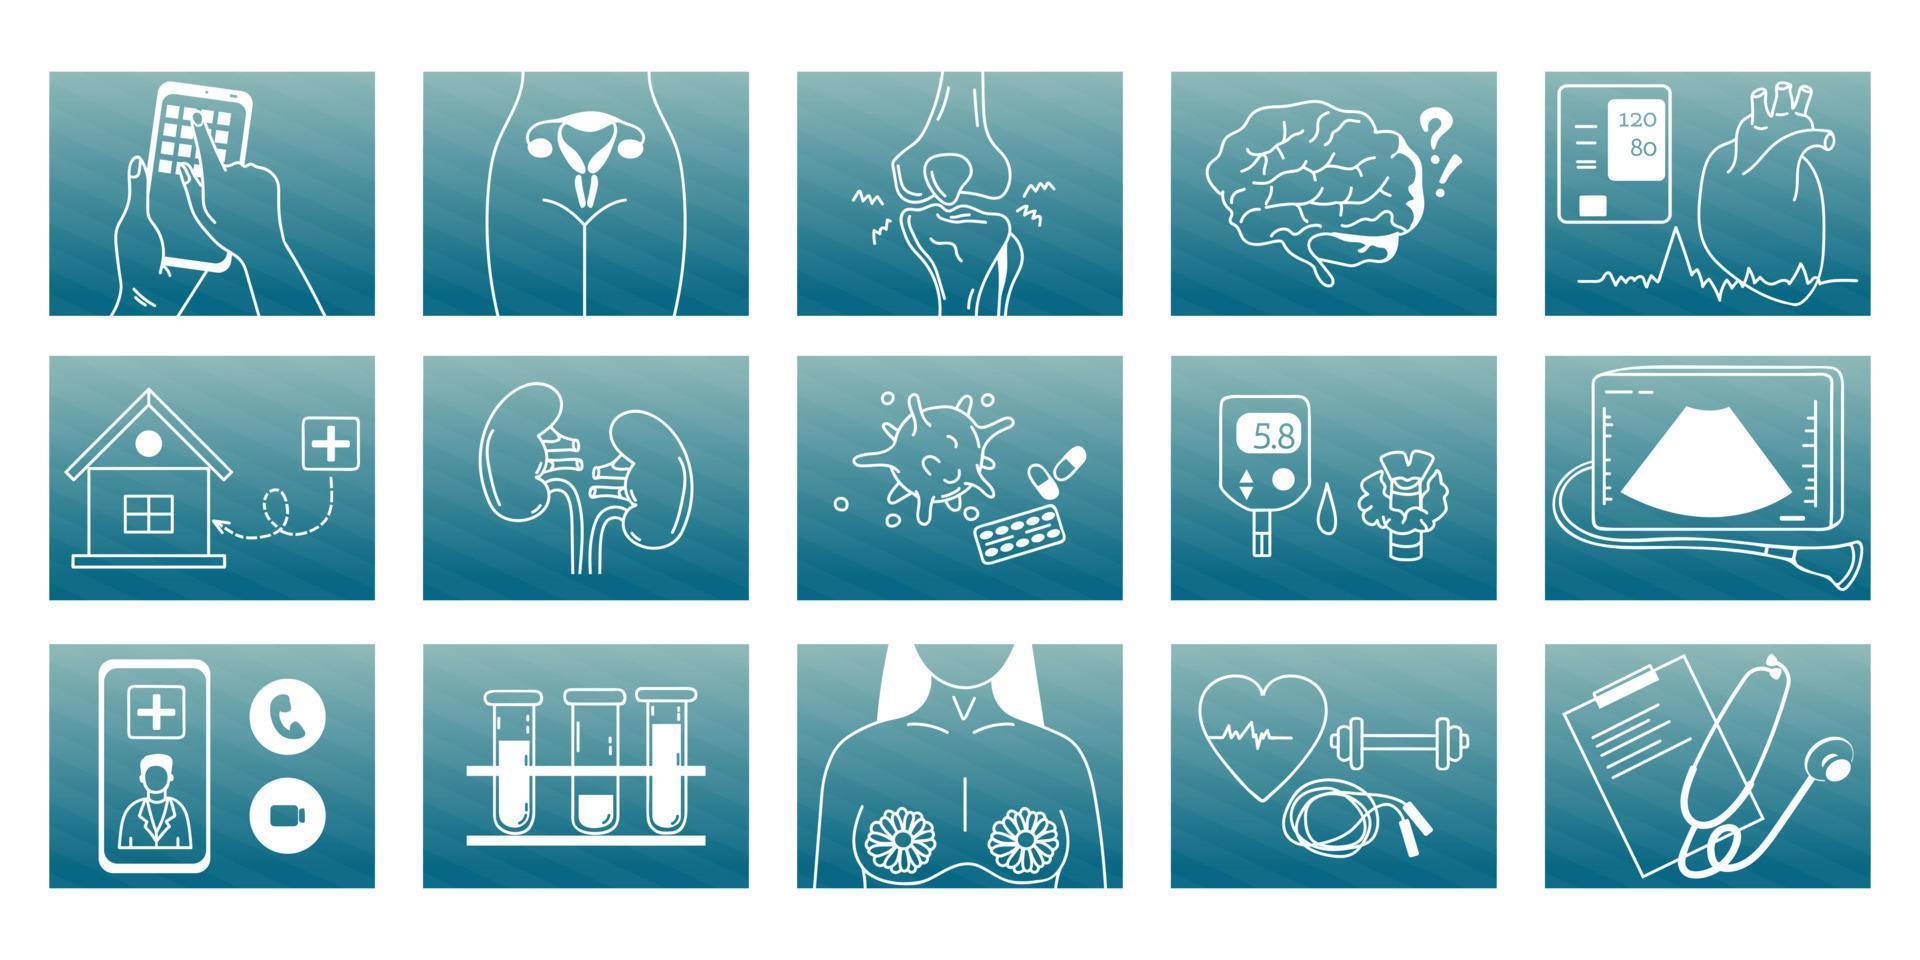 medizinische symbole verschiedener richtungen medizin. Gynäkologie, Ultraschall, Onkologie, Therapie, Orthopädie, Mammologie, Laboruntersuchungen. Vektor